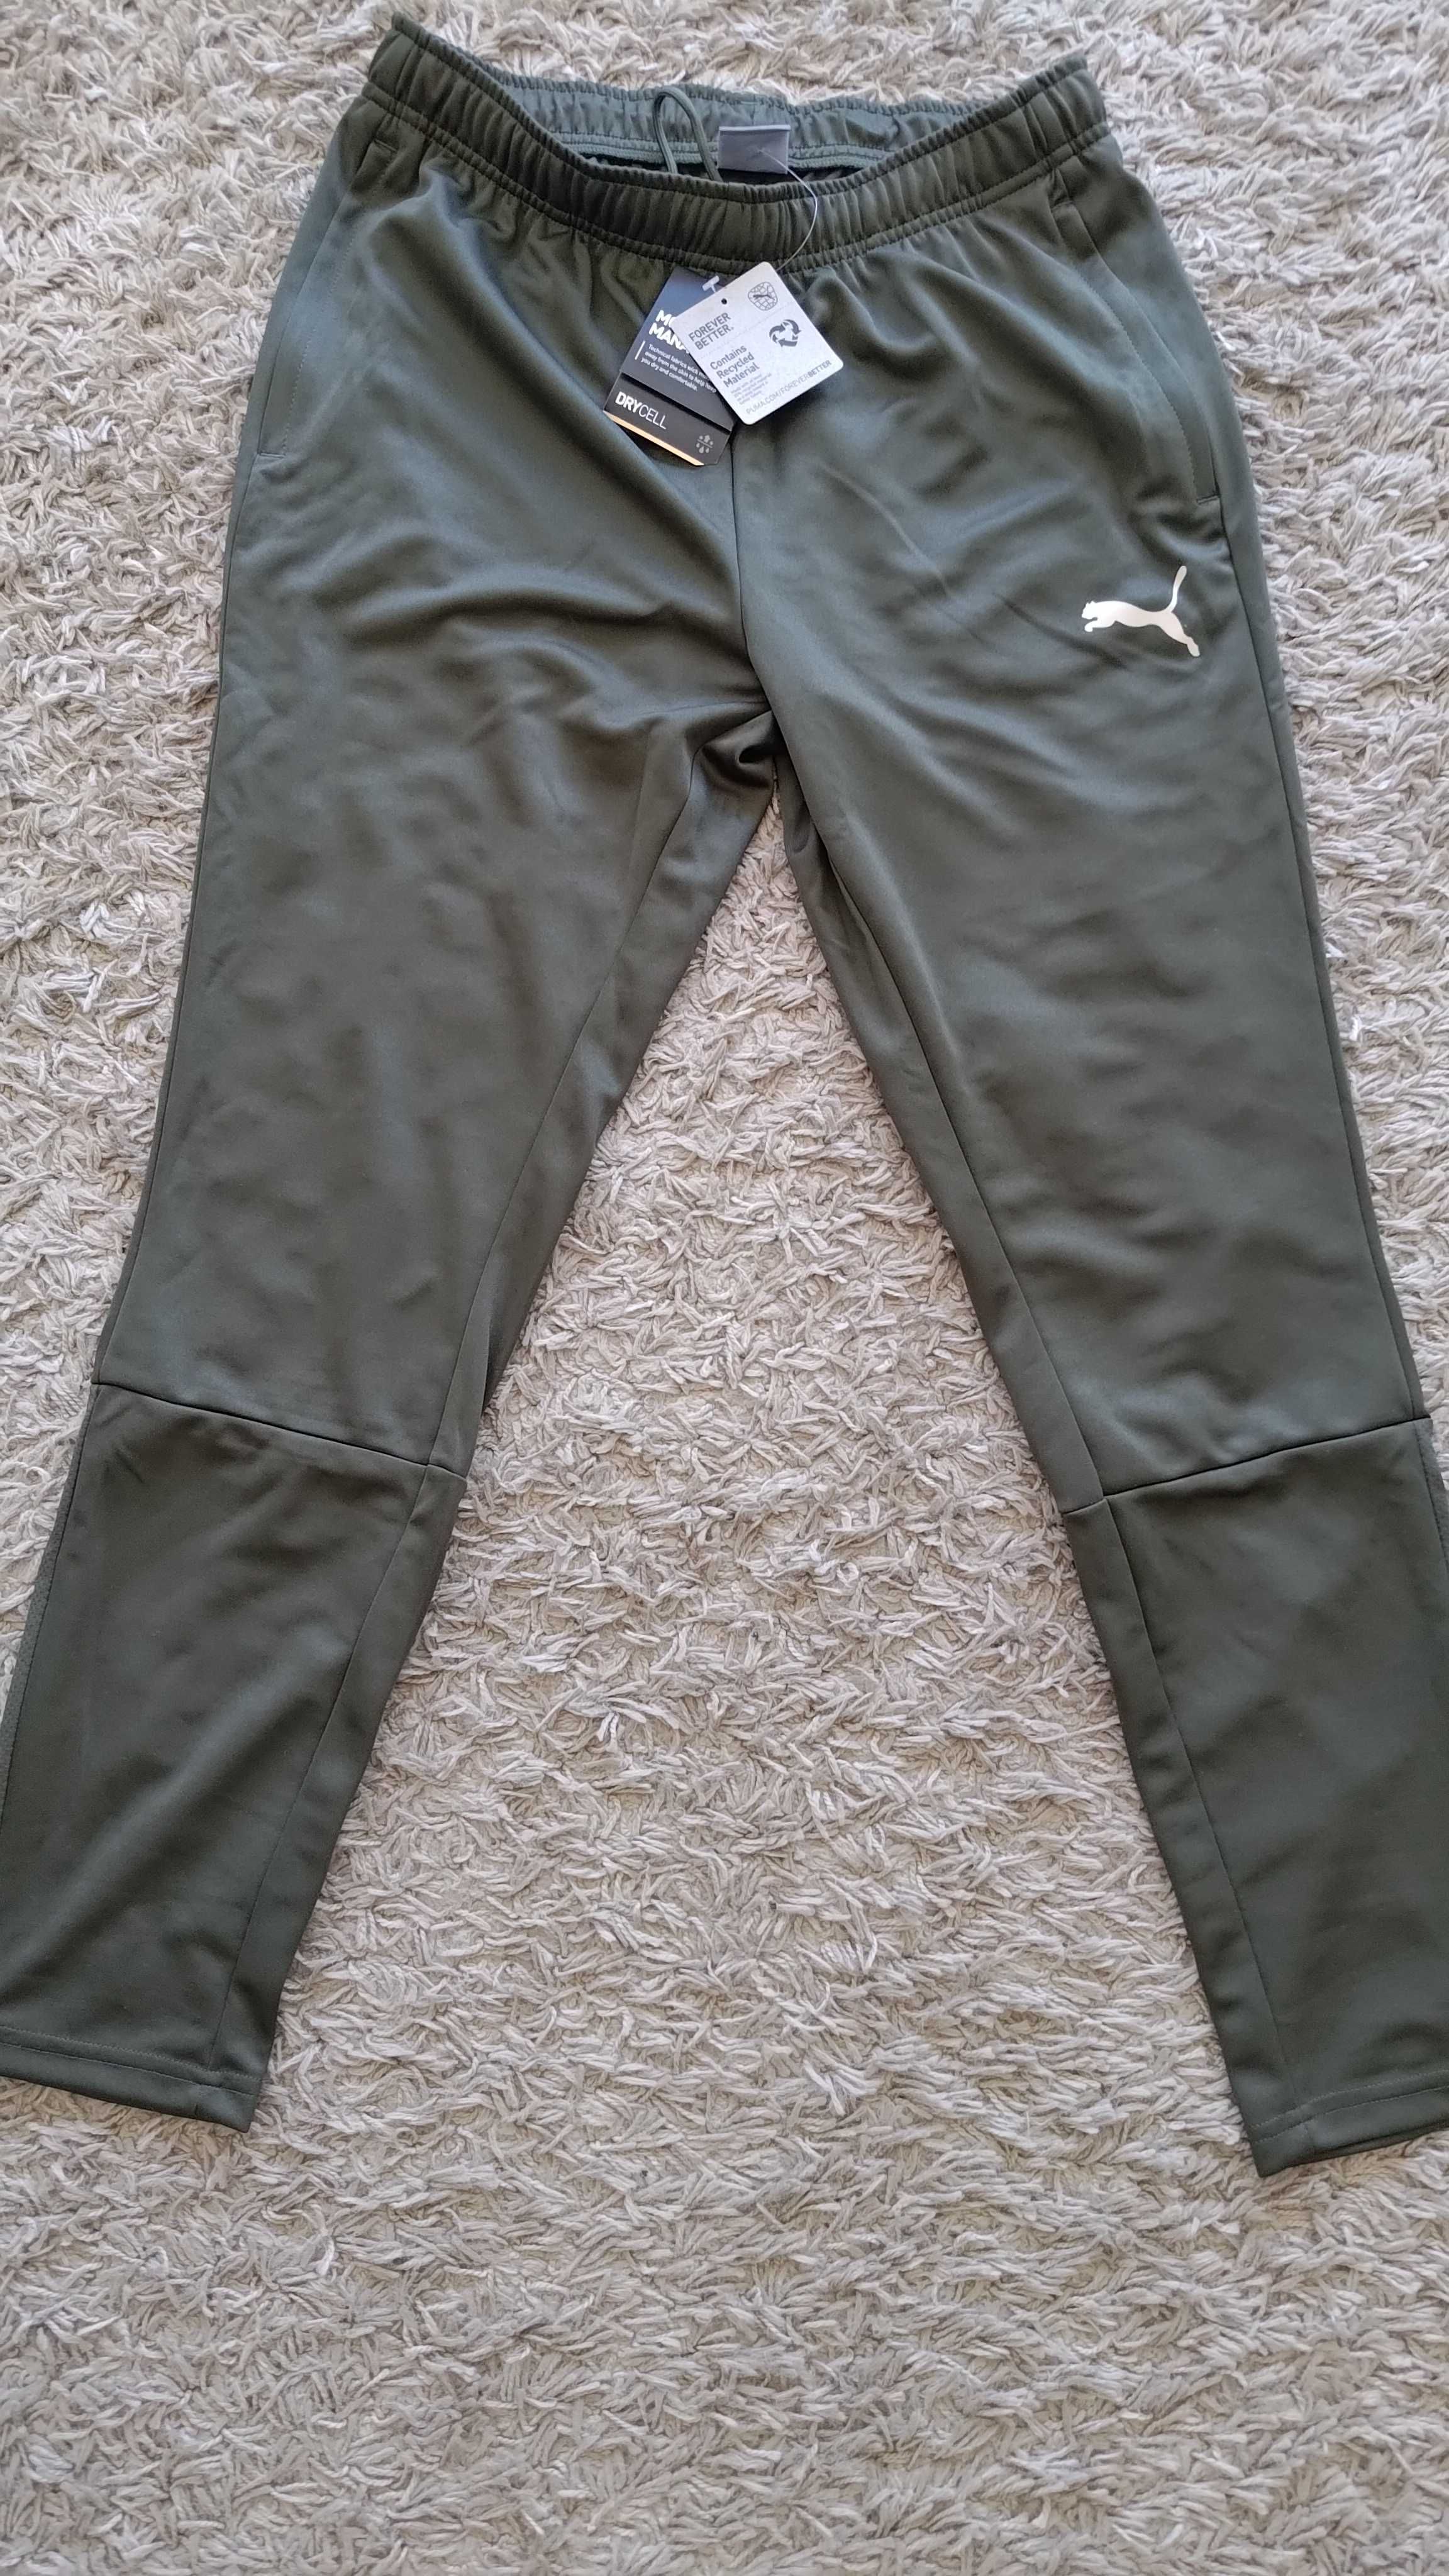 Spodnie dresowe sportowe Puma Individual Pants M forest night zielone